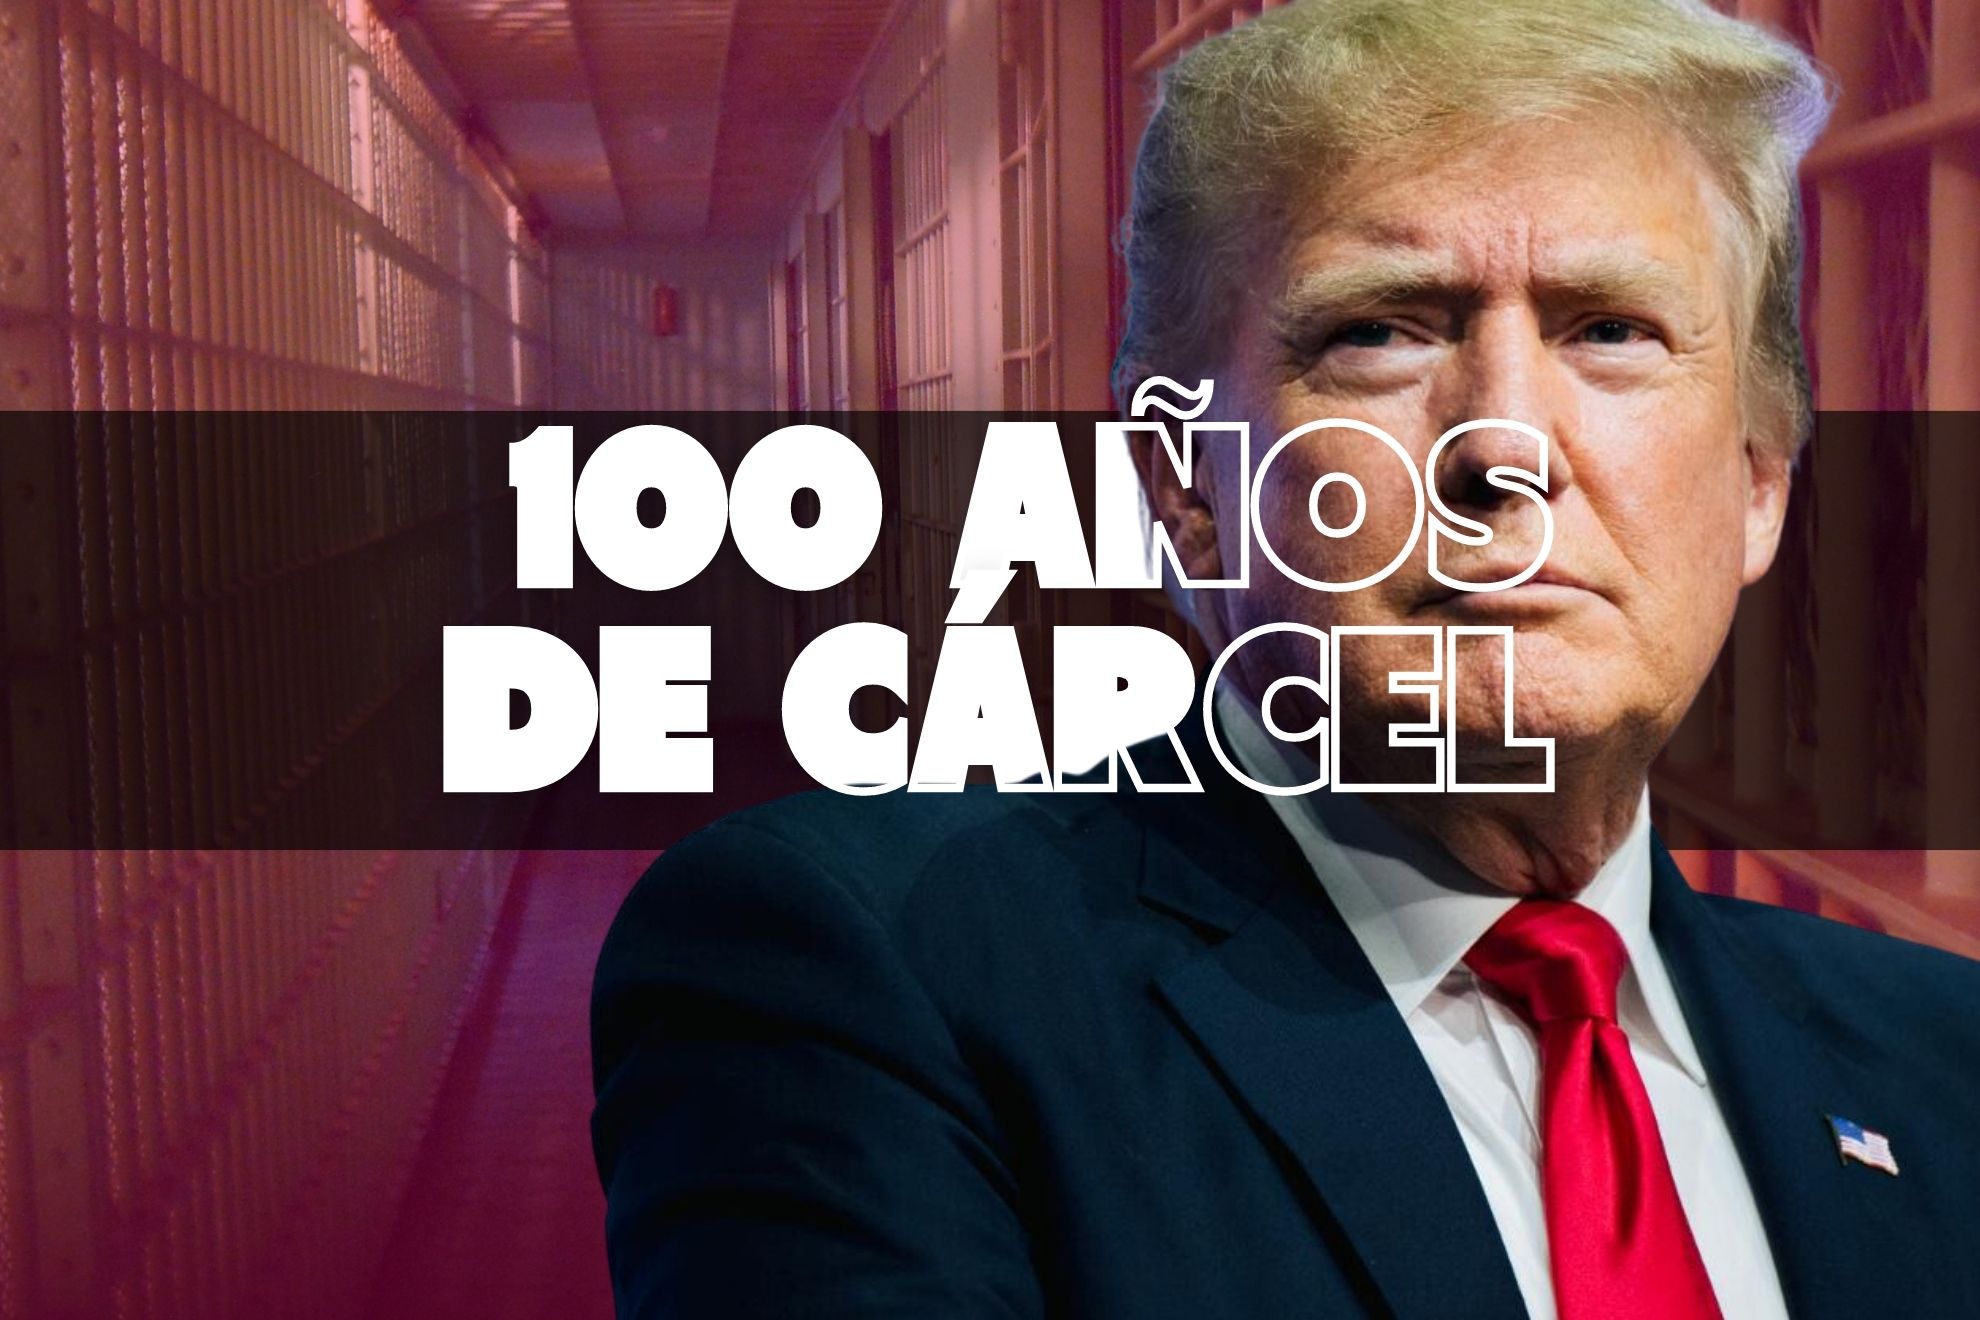 100 años de cárcel en el horizonte de Donald Trump